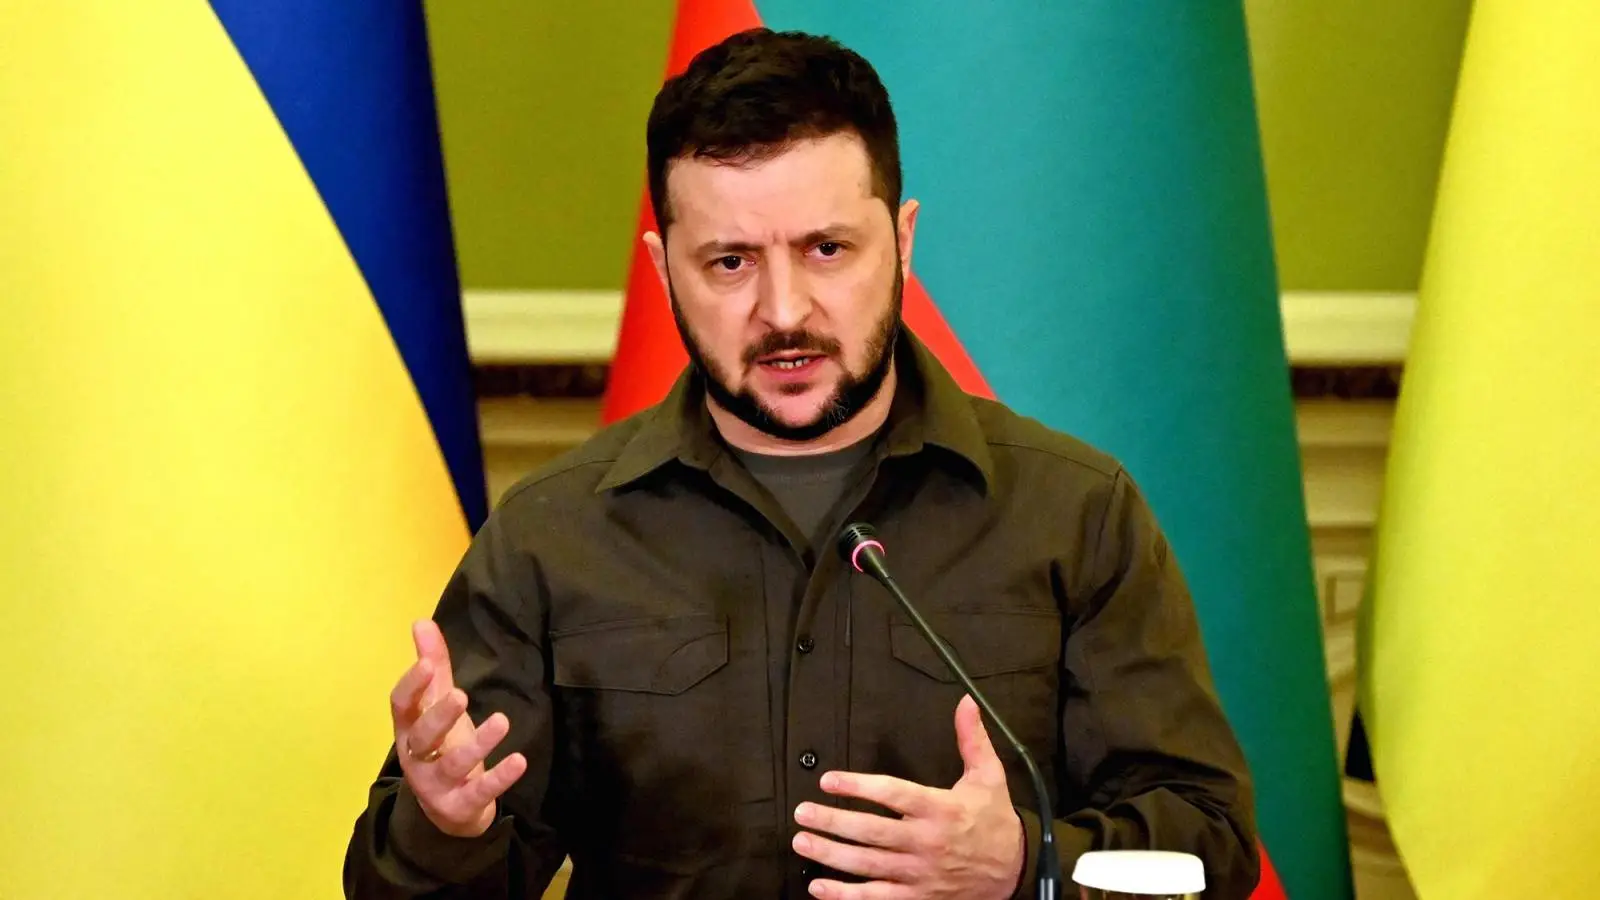 Anuncio oficial de Volodymyr Zelensky sobre la guerra en Ucrania